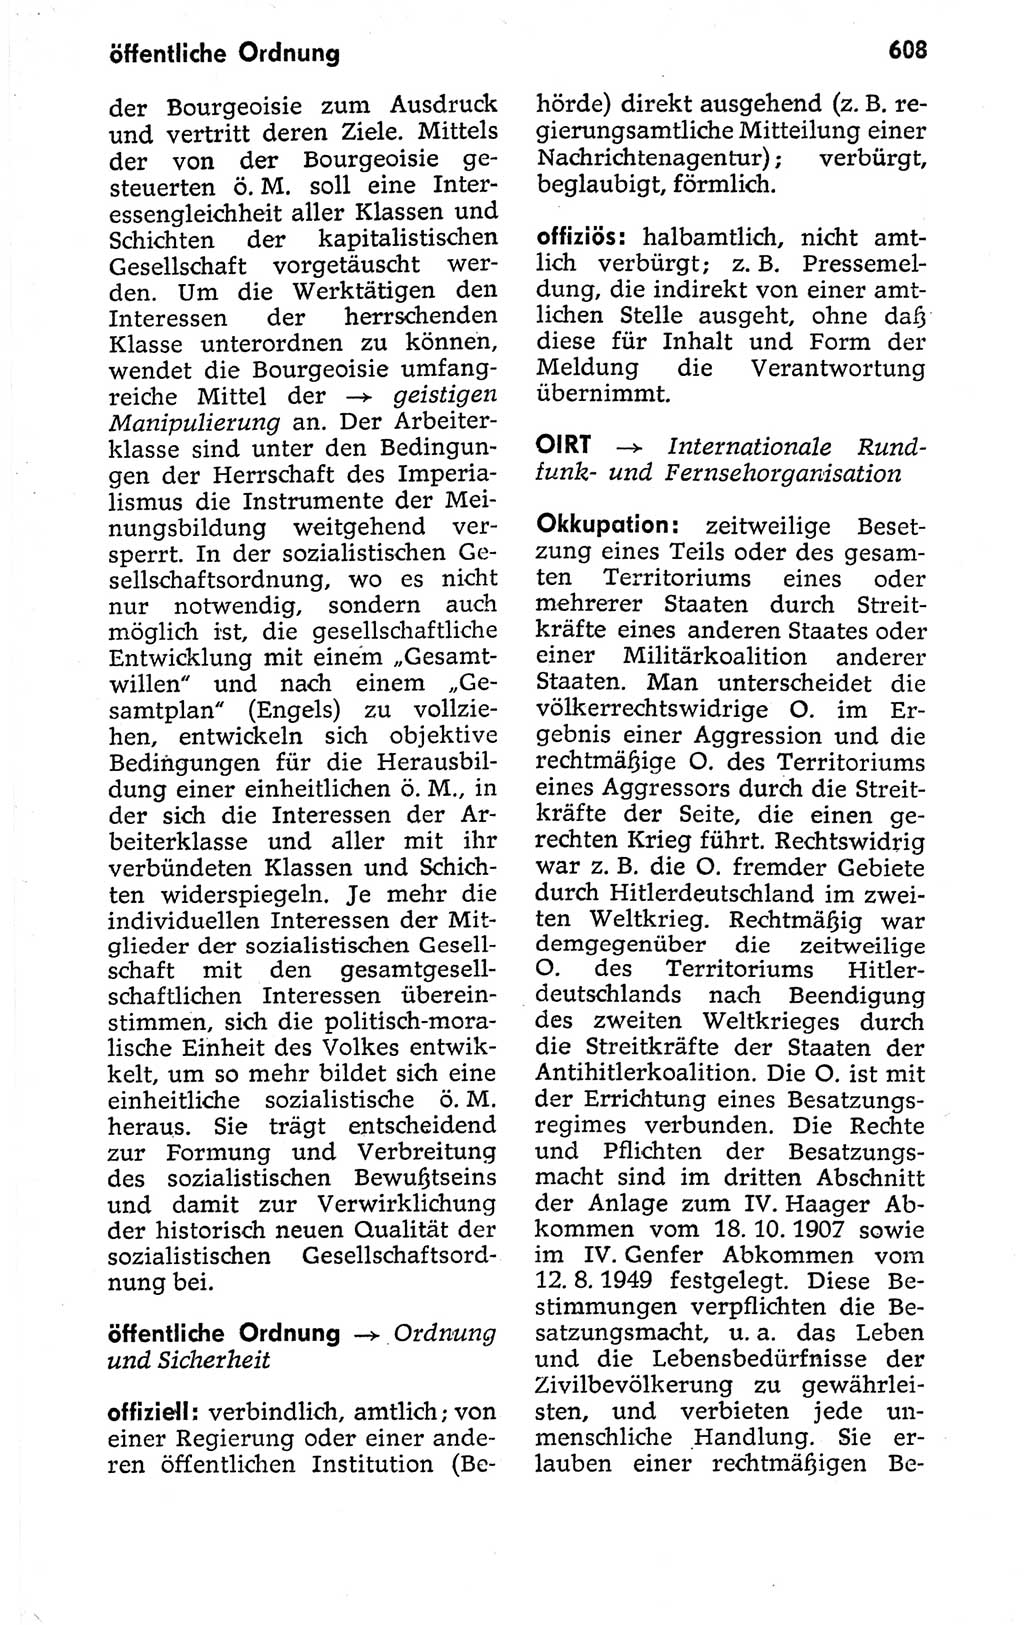 Kleines politisches Wörterbuch [Deutsche Demokratische Republik (DDR)] 1973, Seite 608 (Kl. pol. Wb. DDR 1973, S. 608)